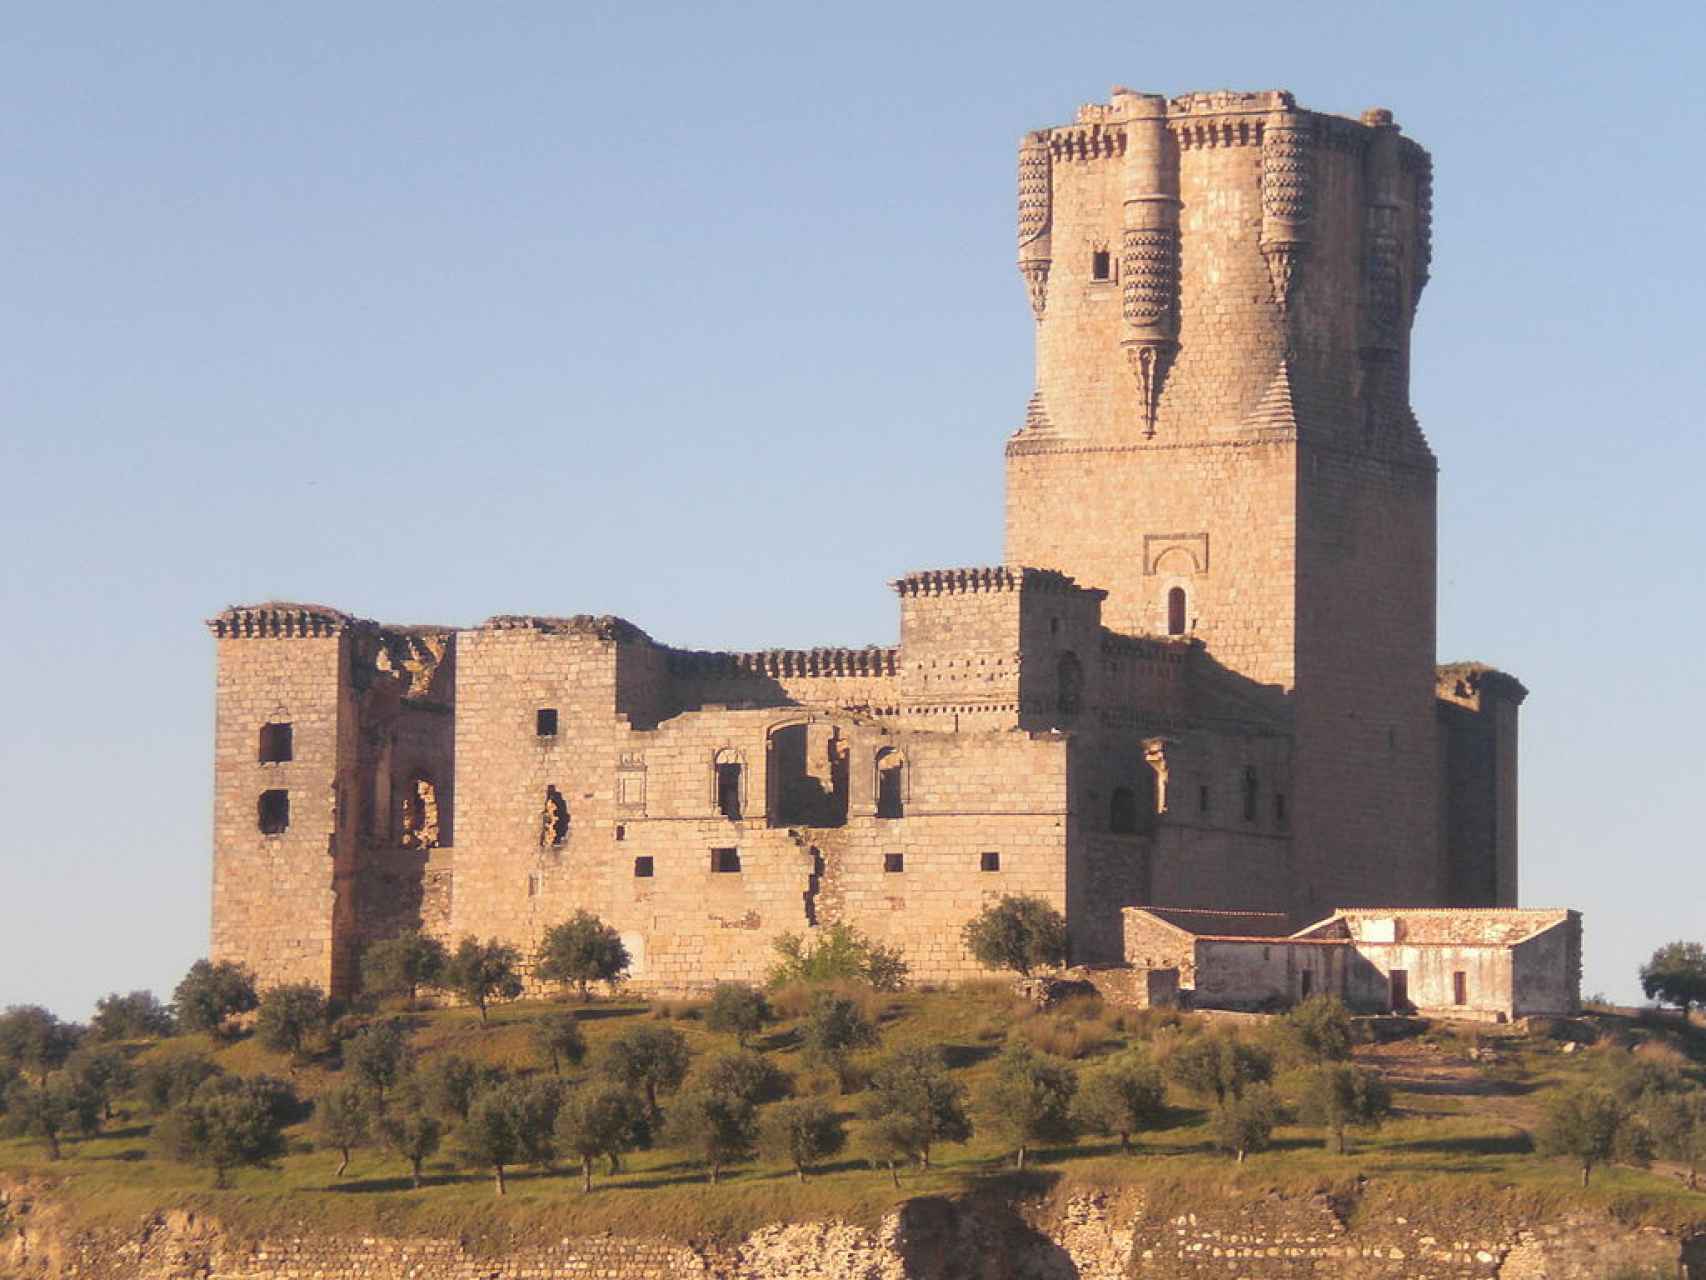 Este es el castillo con la torre del homenaje más alta de España